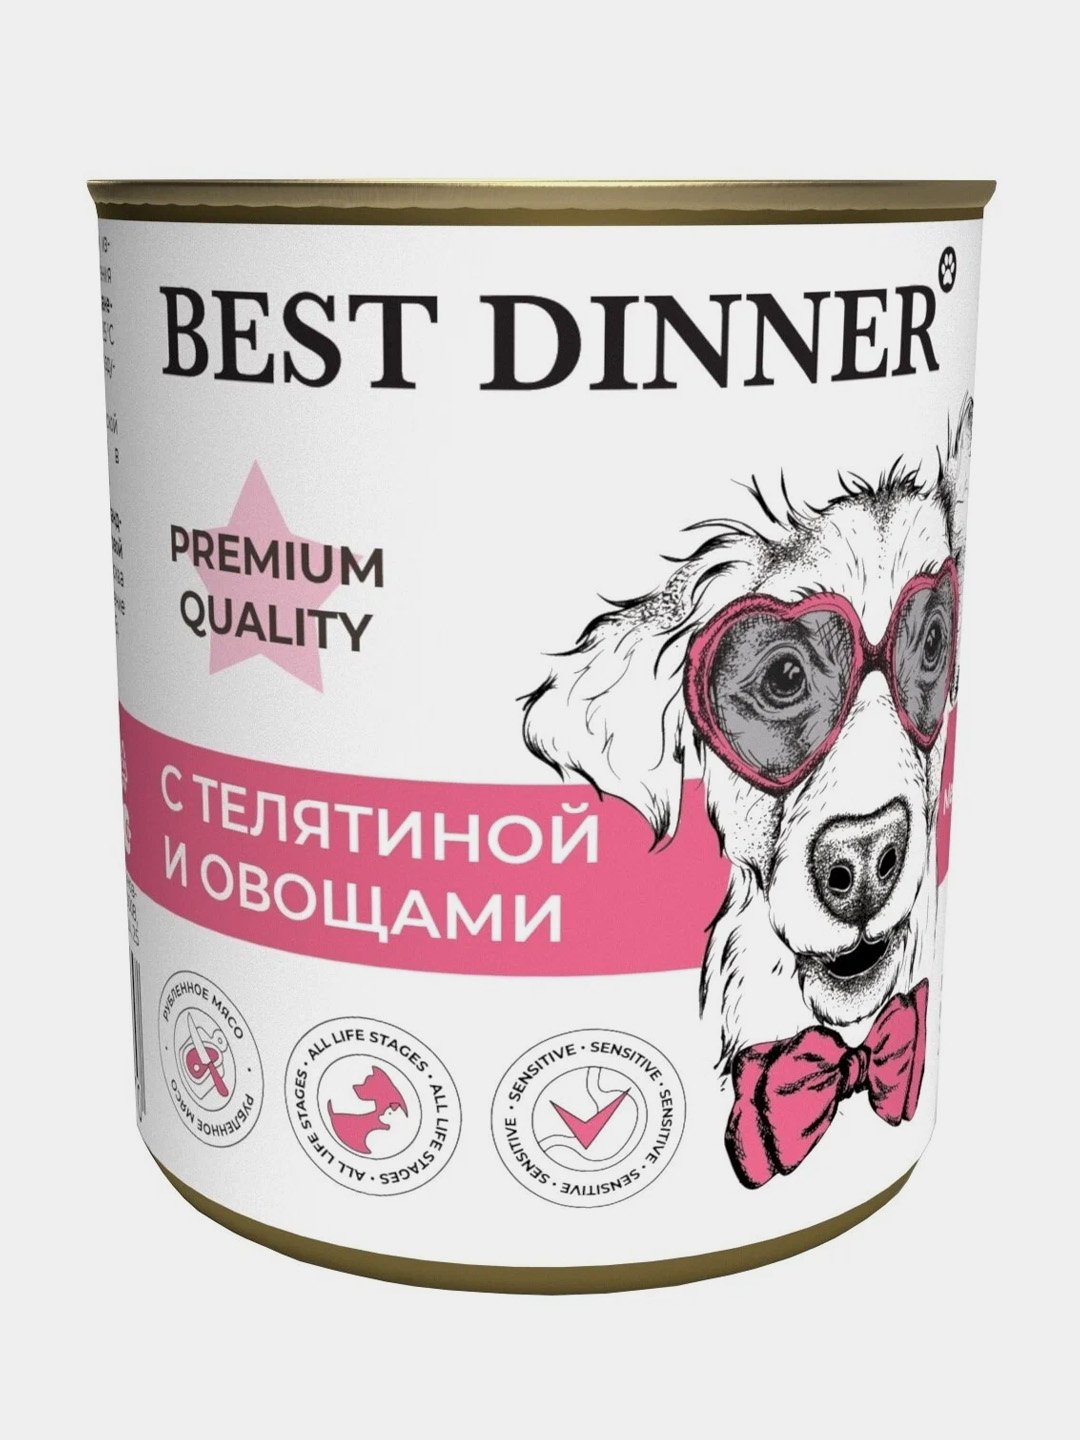 Купить корма бест. Бест Диннер консервы для собак. Best dinner корм для собак консервы. Best dinner Premium консервы для собак телятина 340г 4620764265192. Бест Динер консервы для собак гастро.